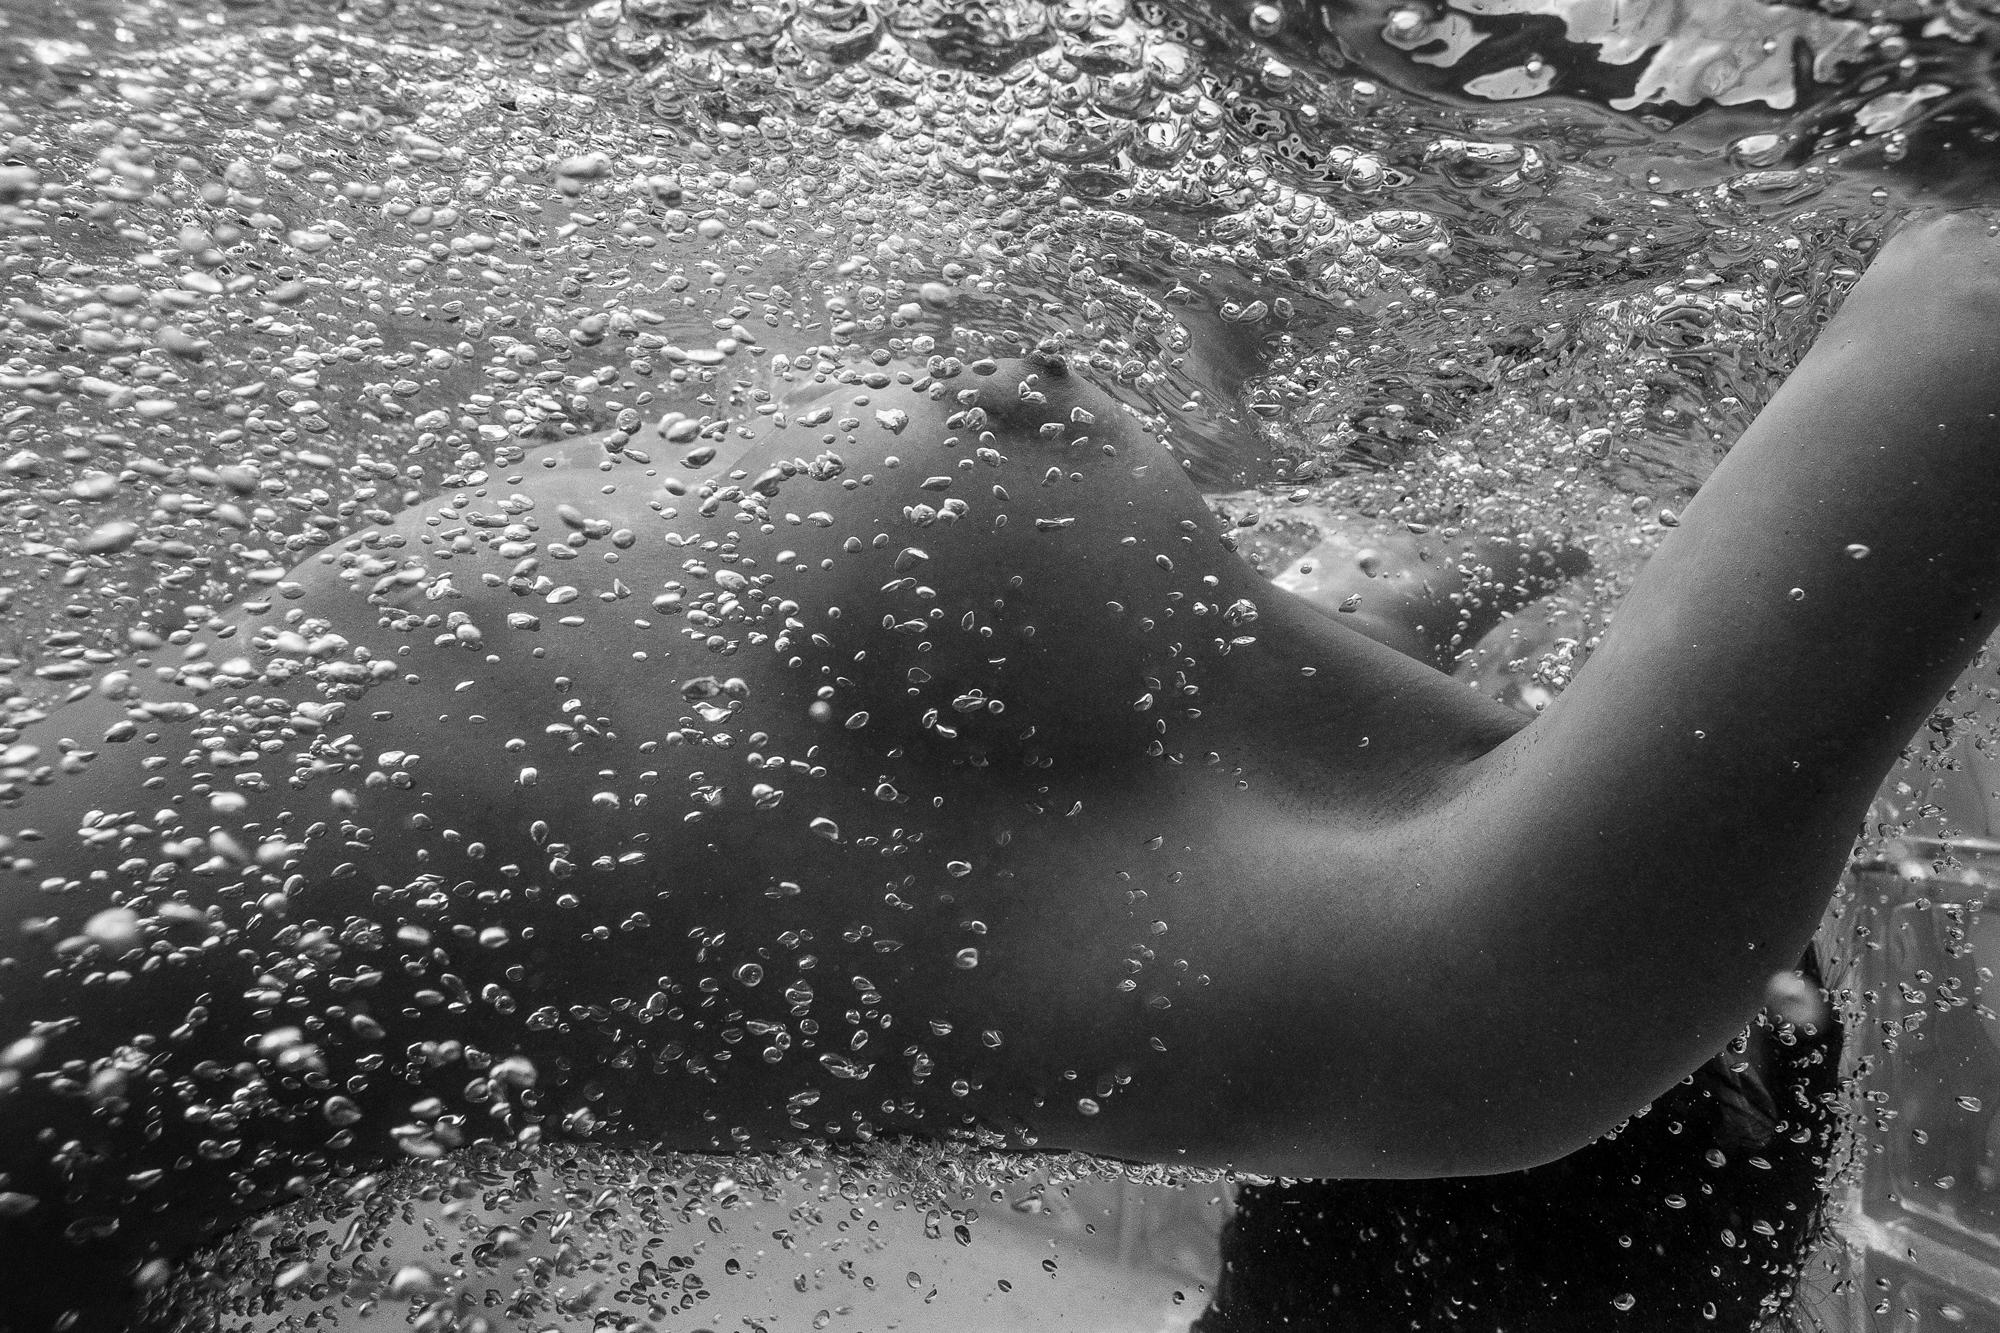 Bubbles - underwater photograph - archival pigment print